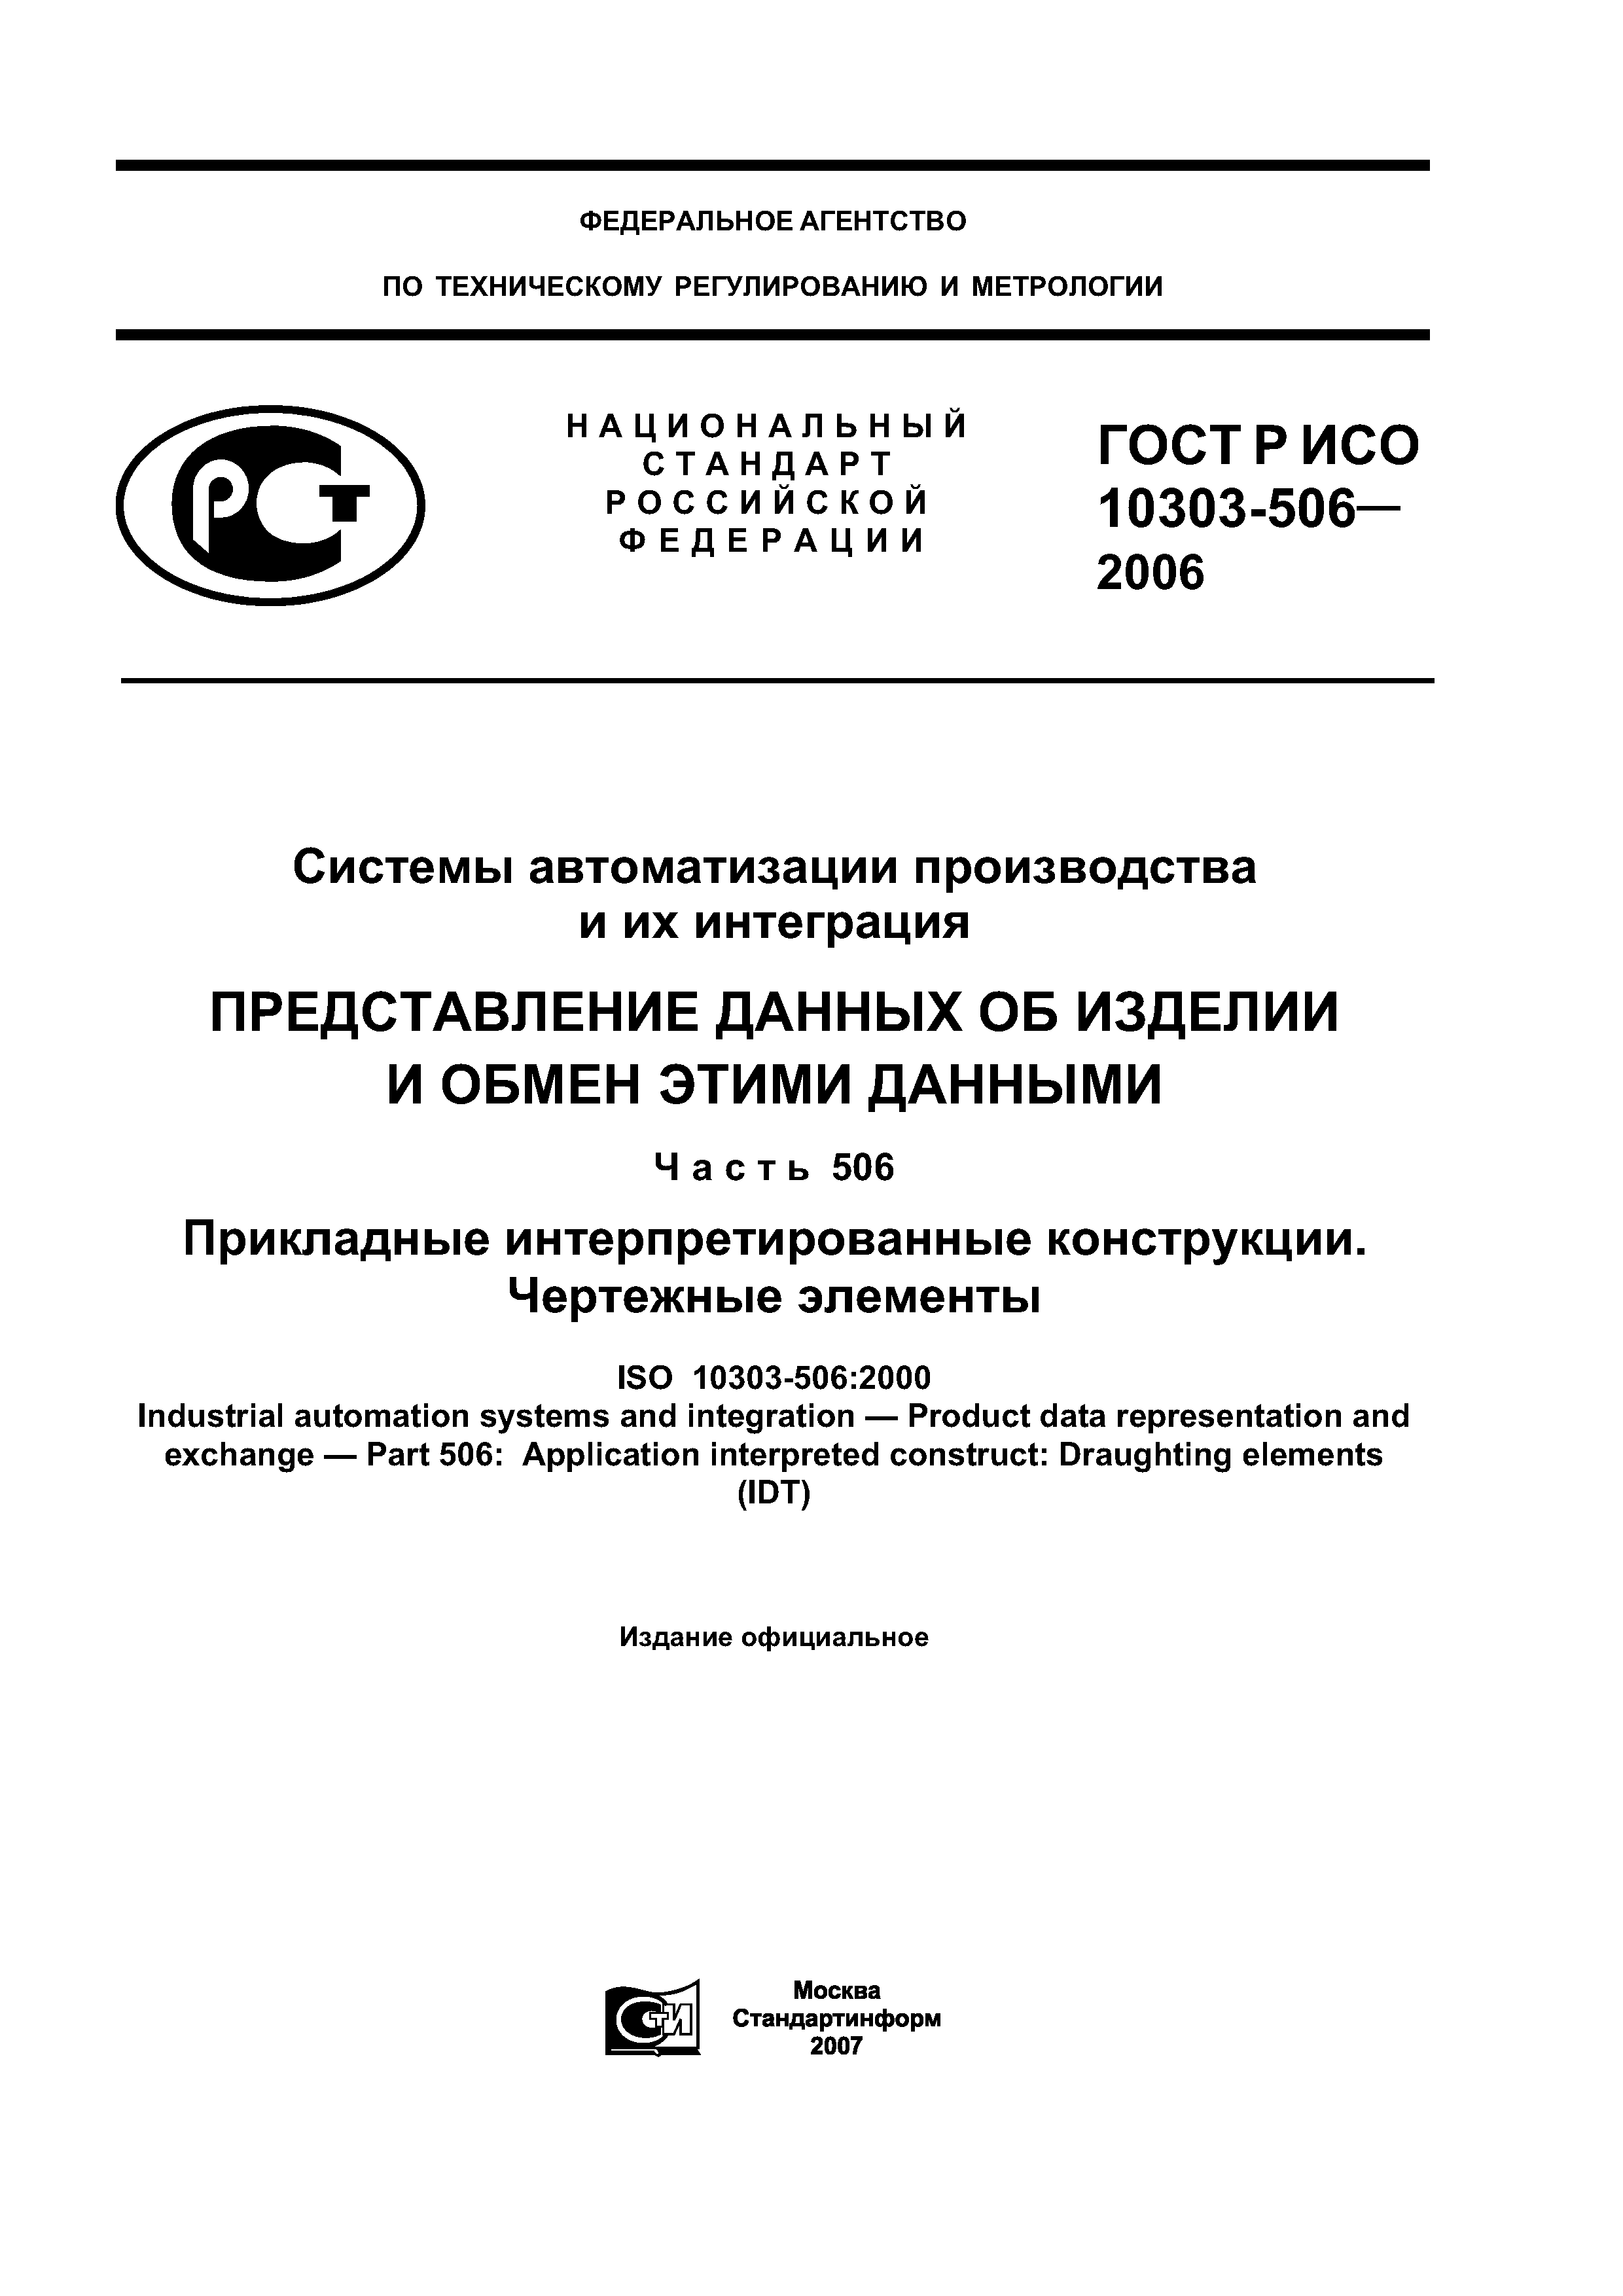 ГОСТ Р ИСО 10303-506-2006